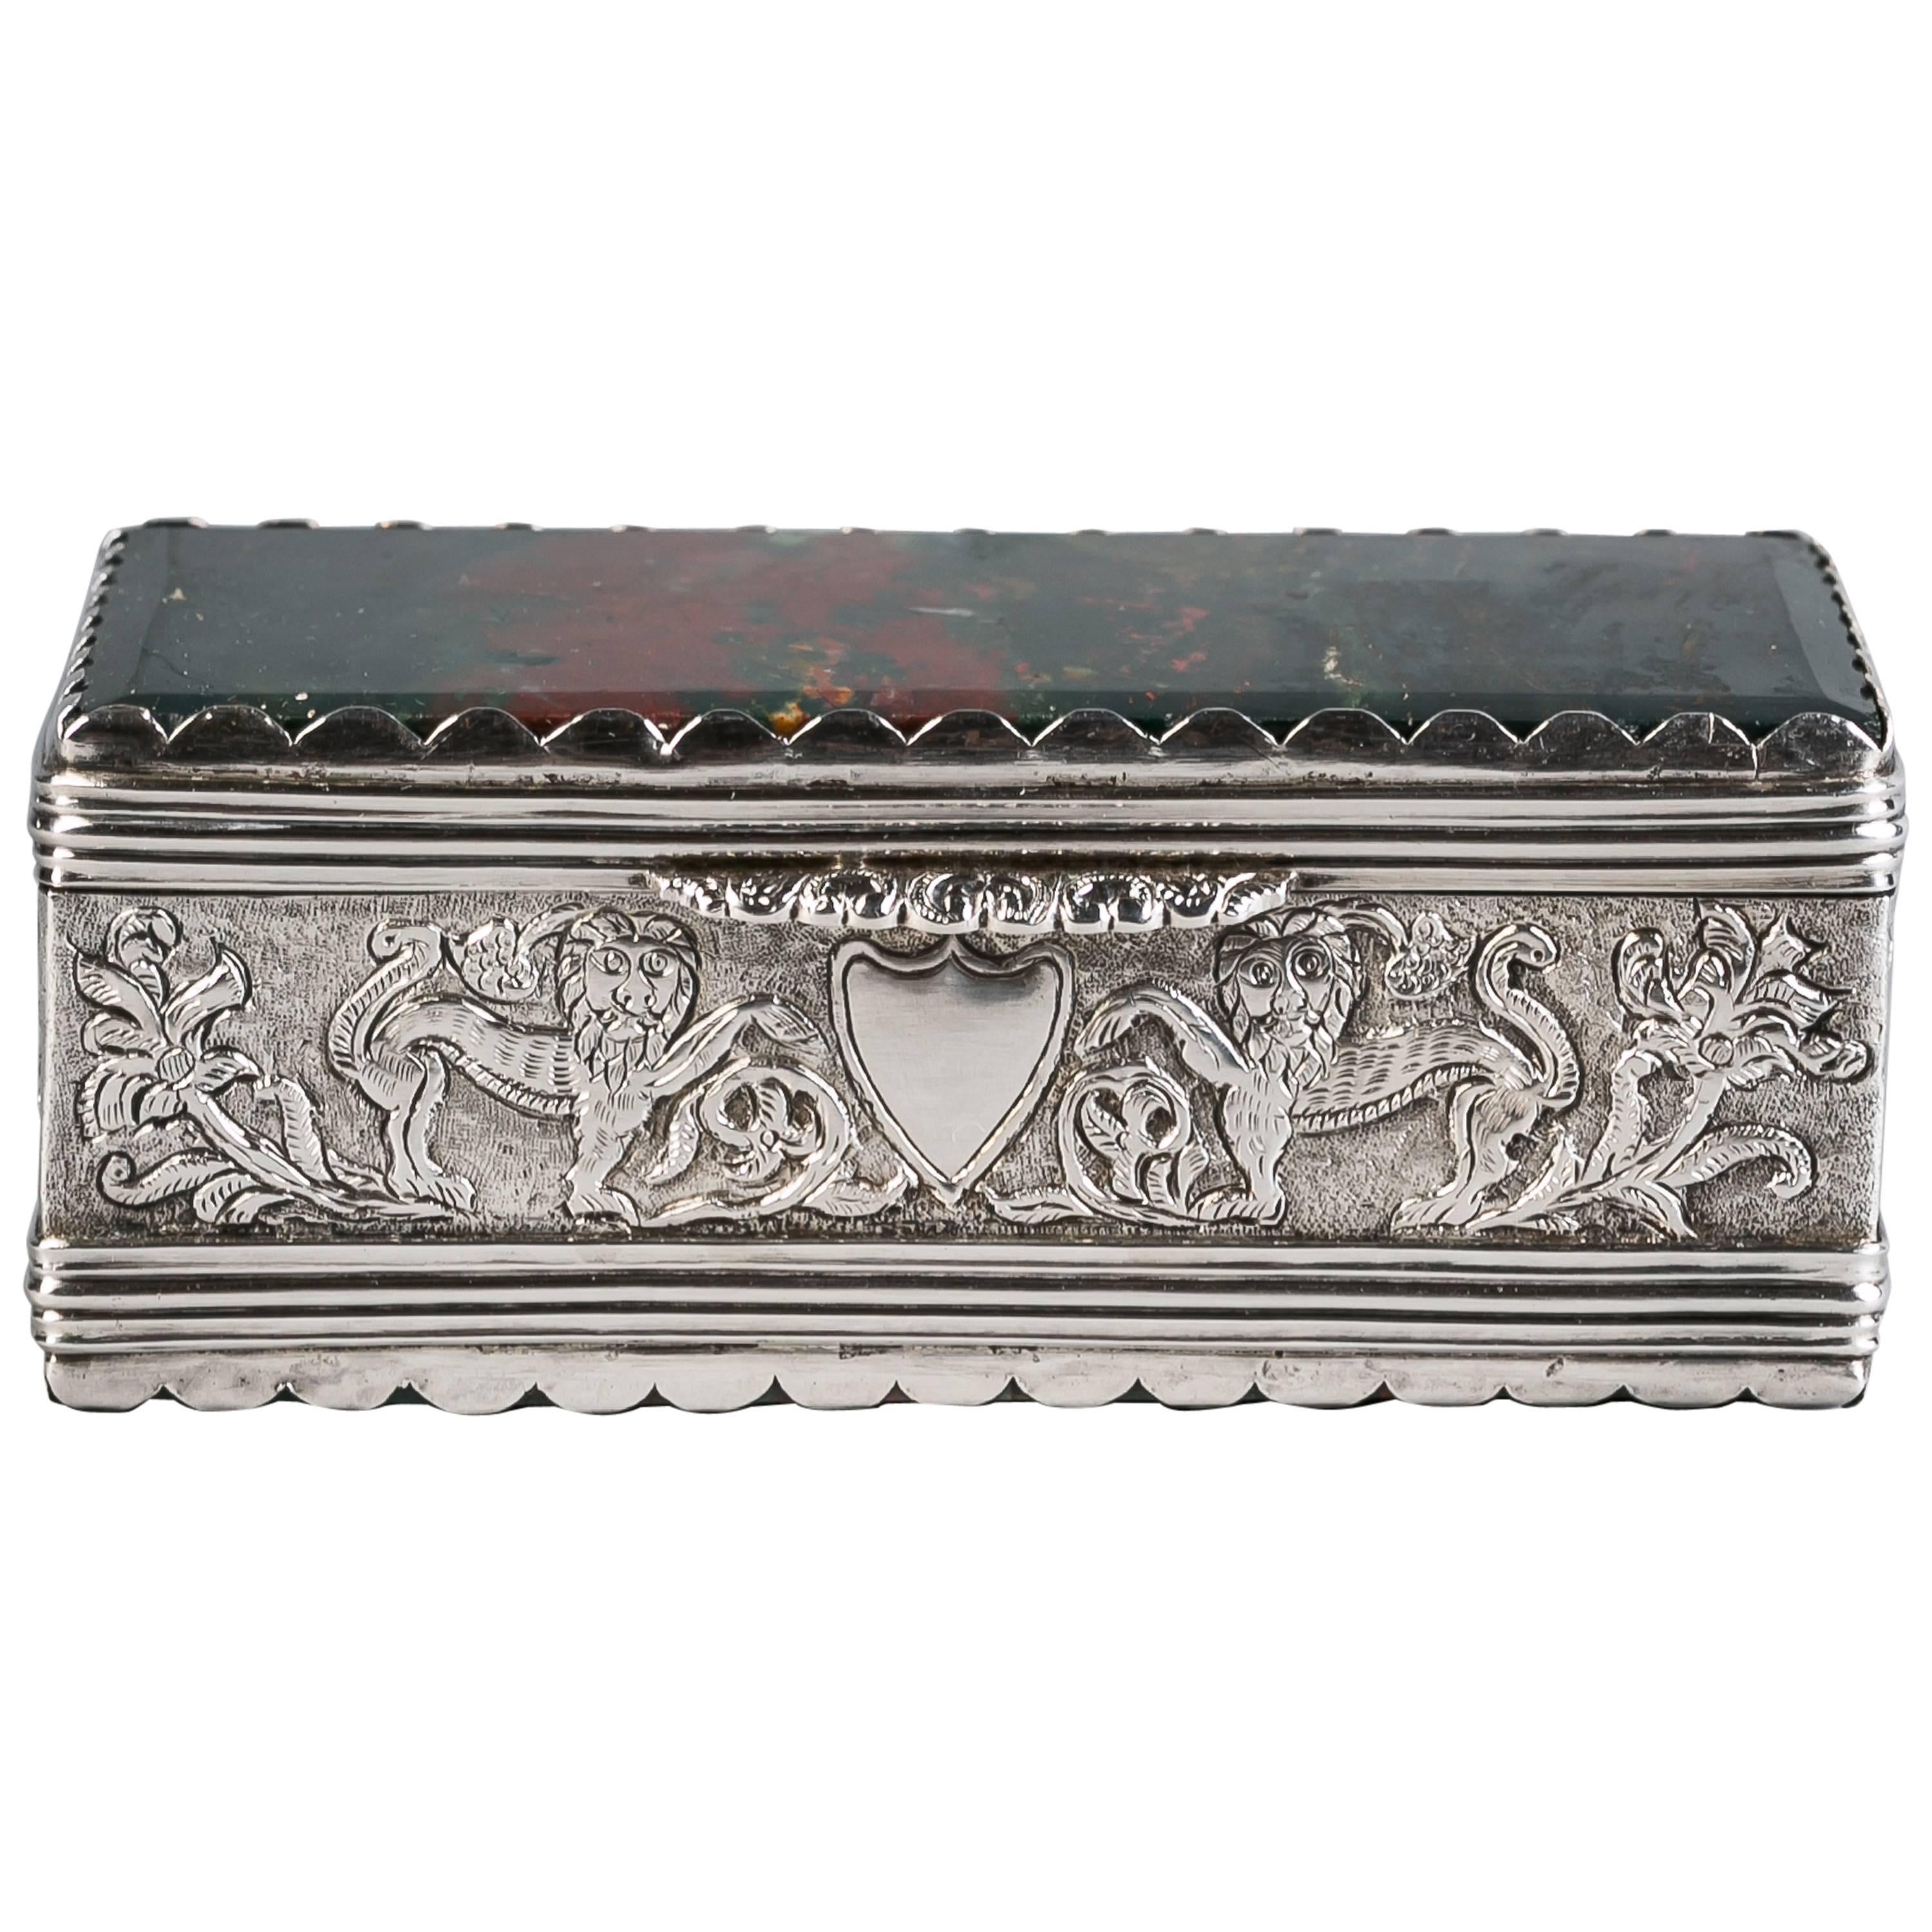 Continental Silver and Agate Box, circa 1870